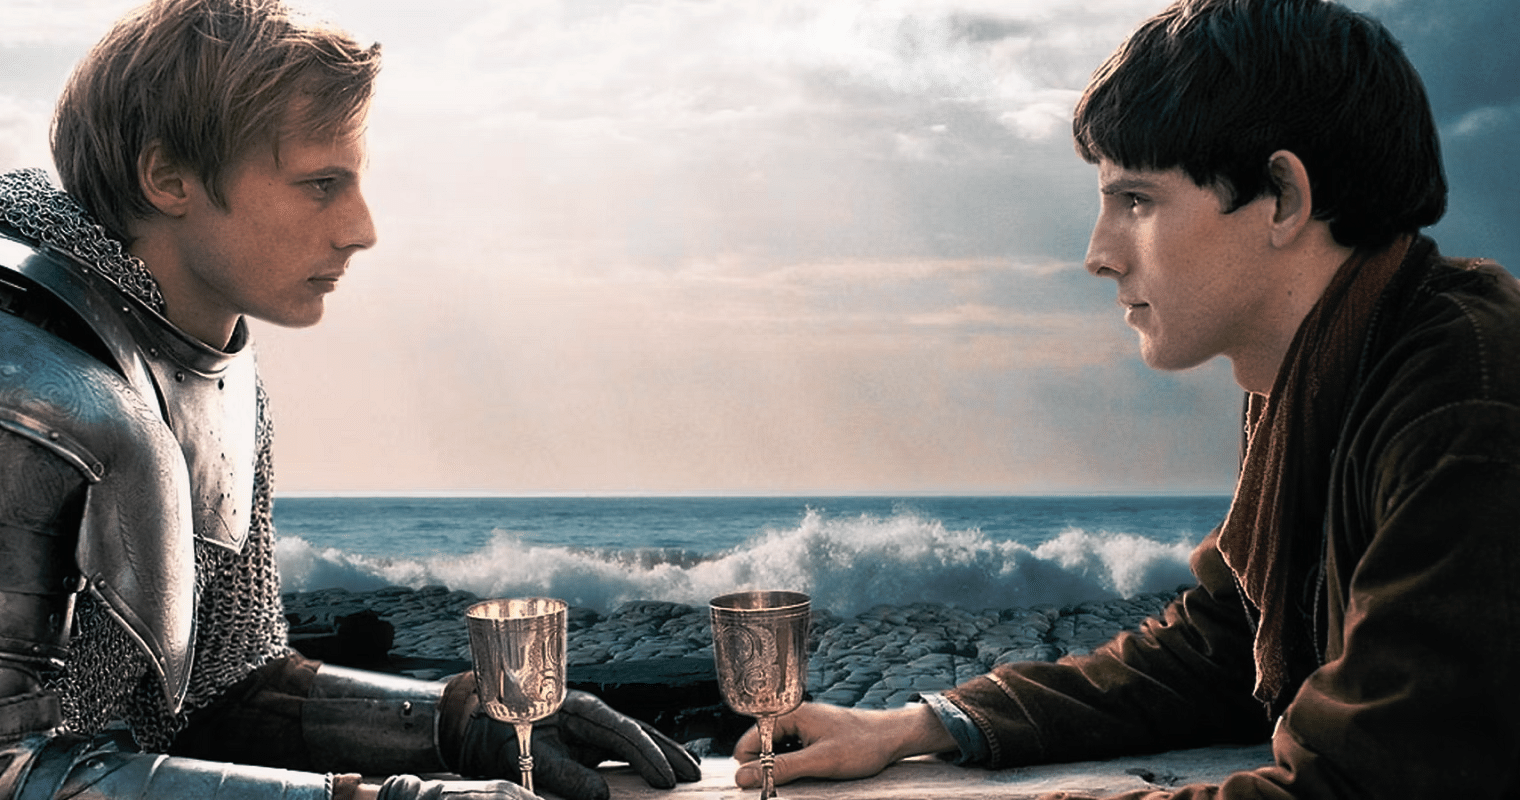 Comment l’amitié entre Merlin et Arthur est-elle dépeinte dans la série ?